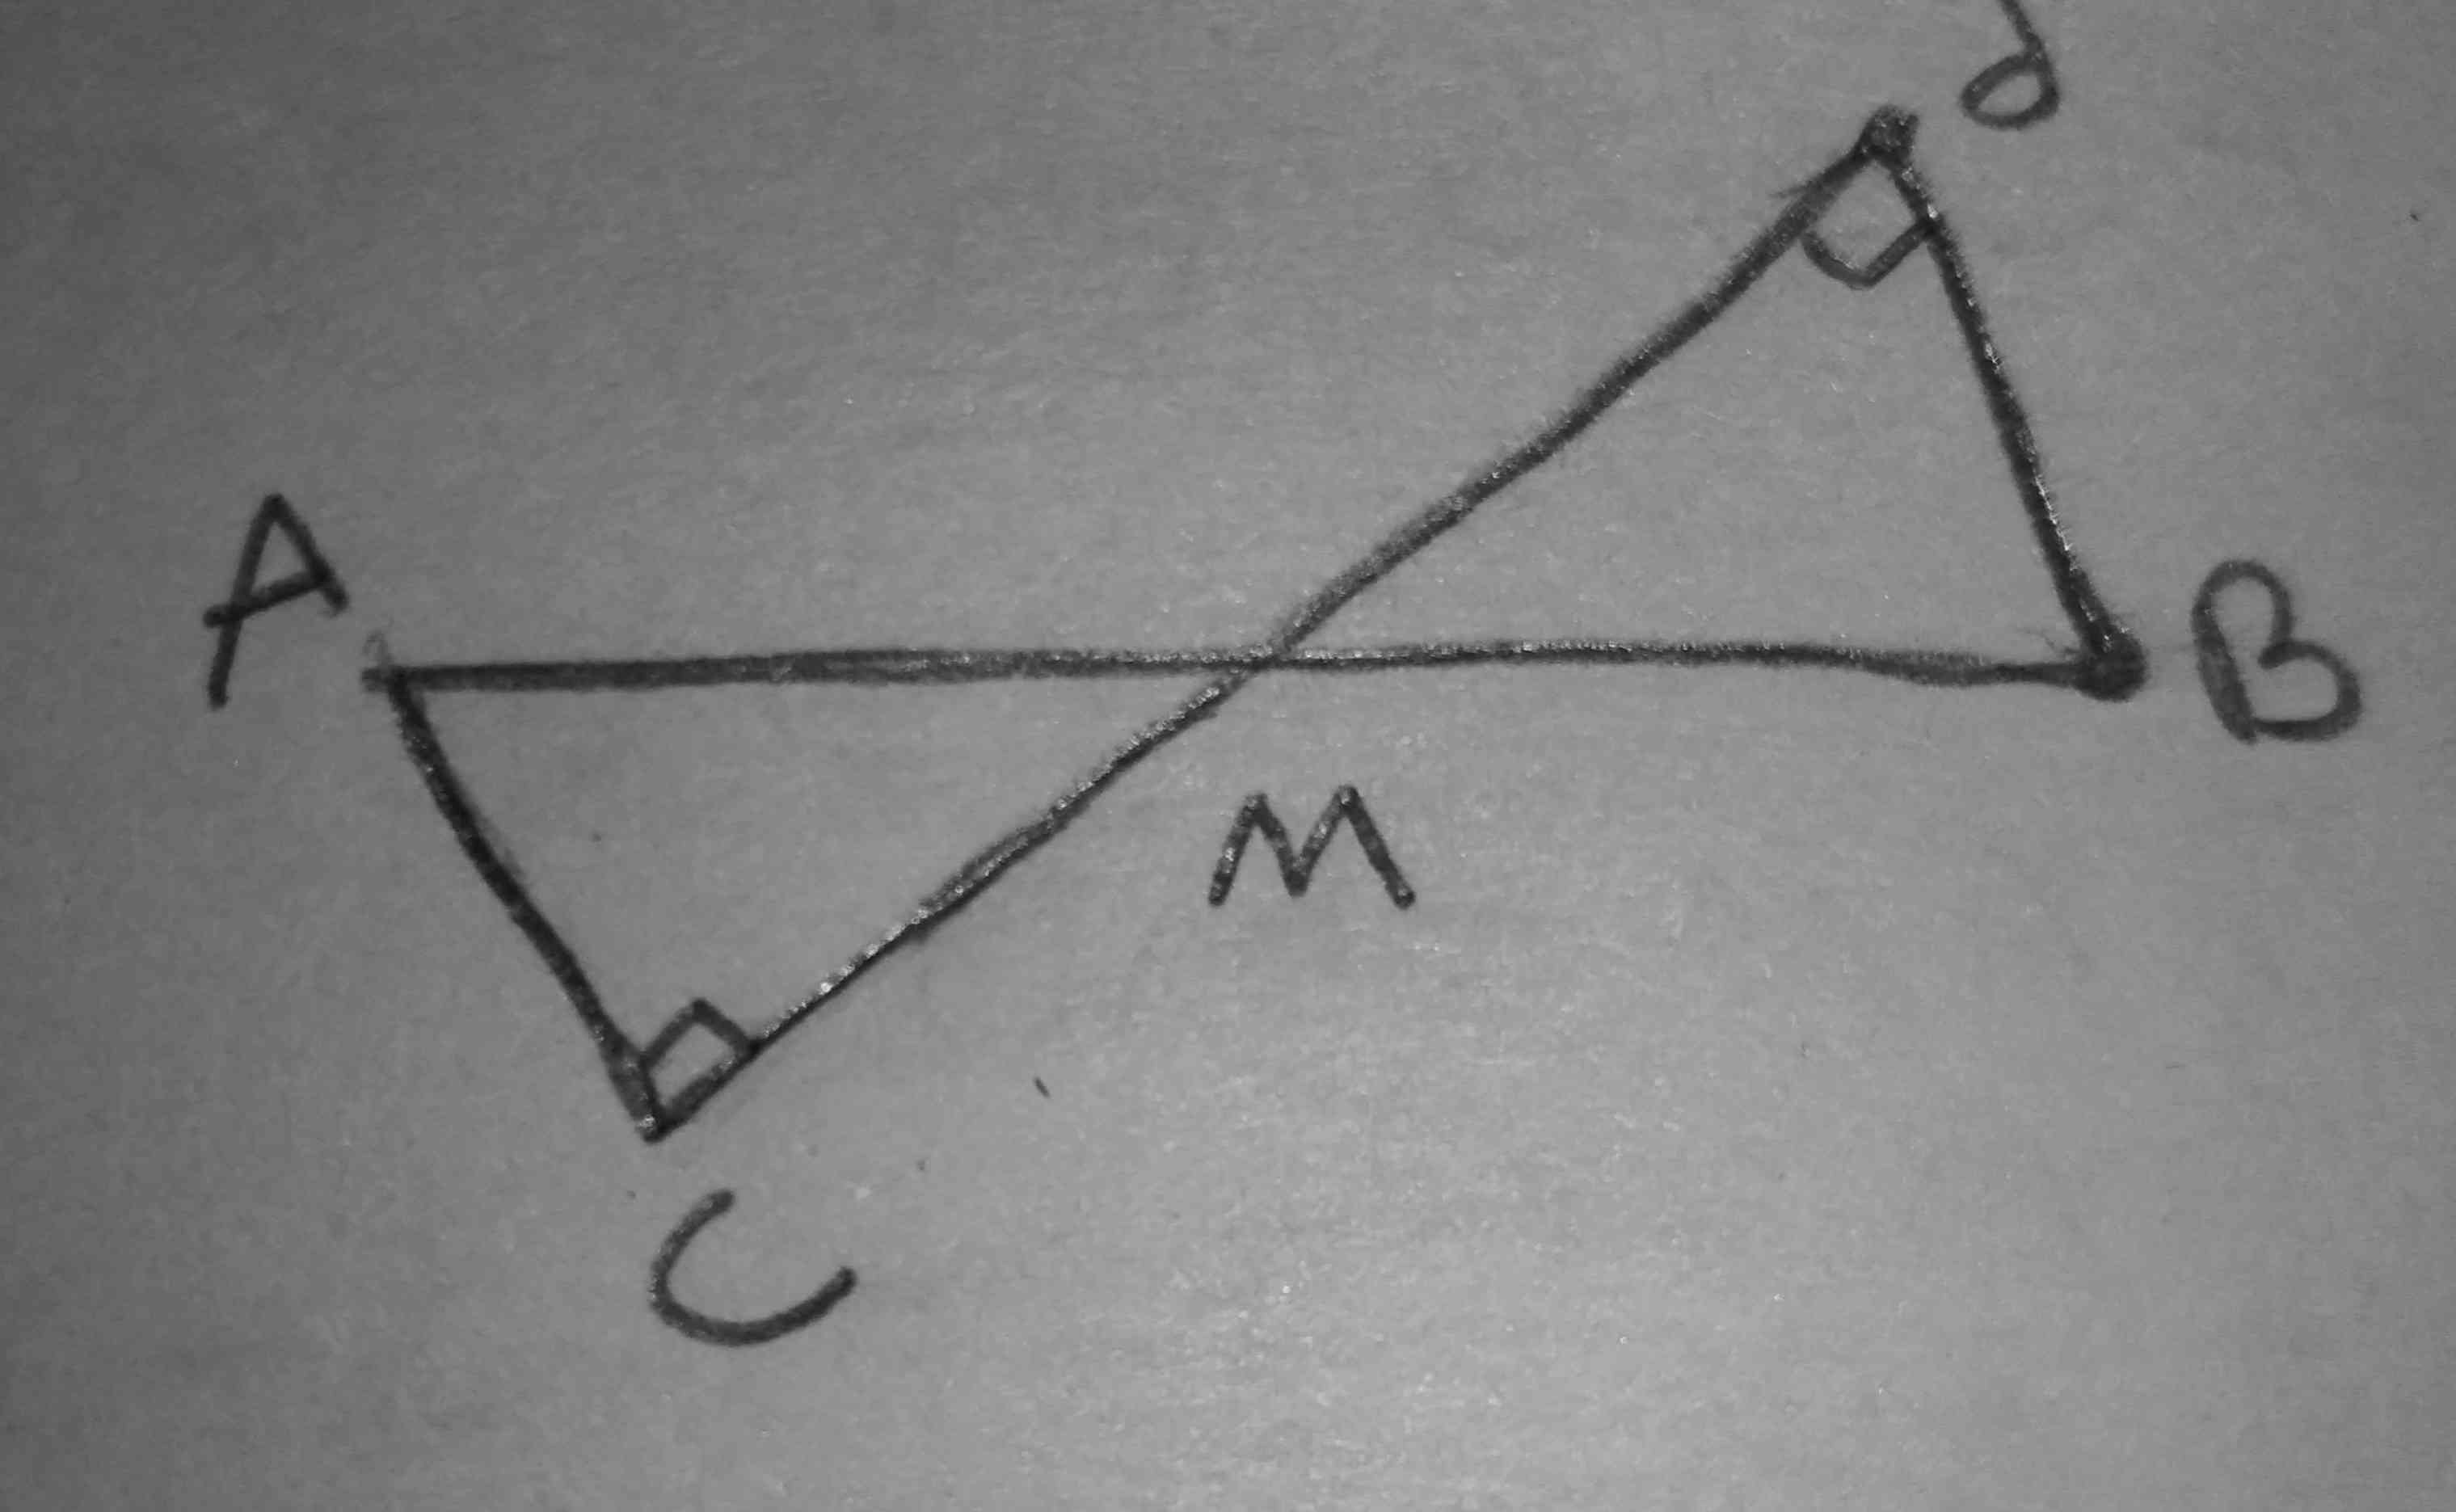 خط d از وسط پاره خط AB گذشته ثابت کنید که فاصله دو نقطه AوB از خط با هم مساویند.

لطفا اگر کسی این سوالو بلده جواب بده🙏🙏